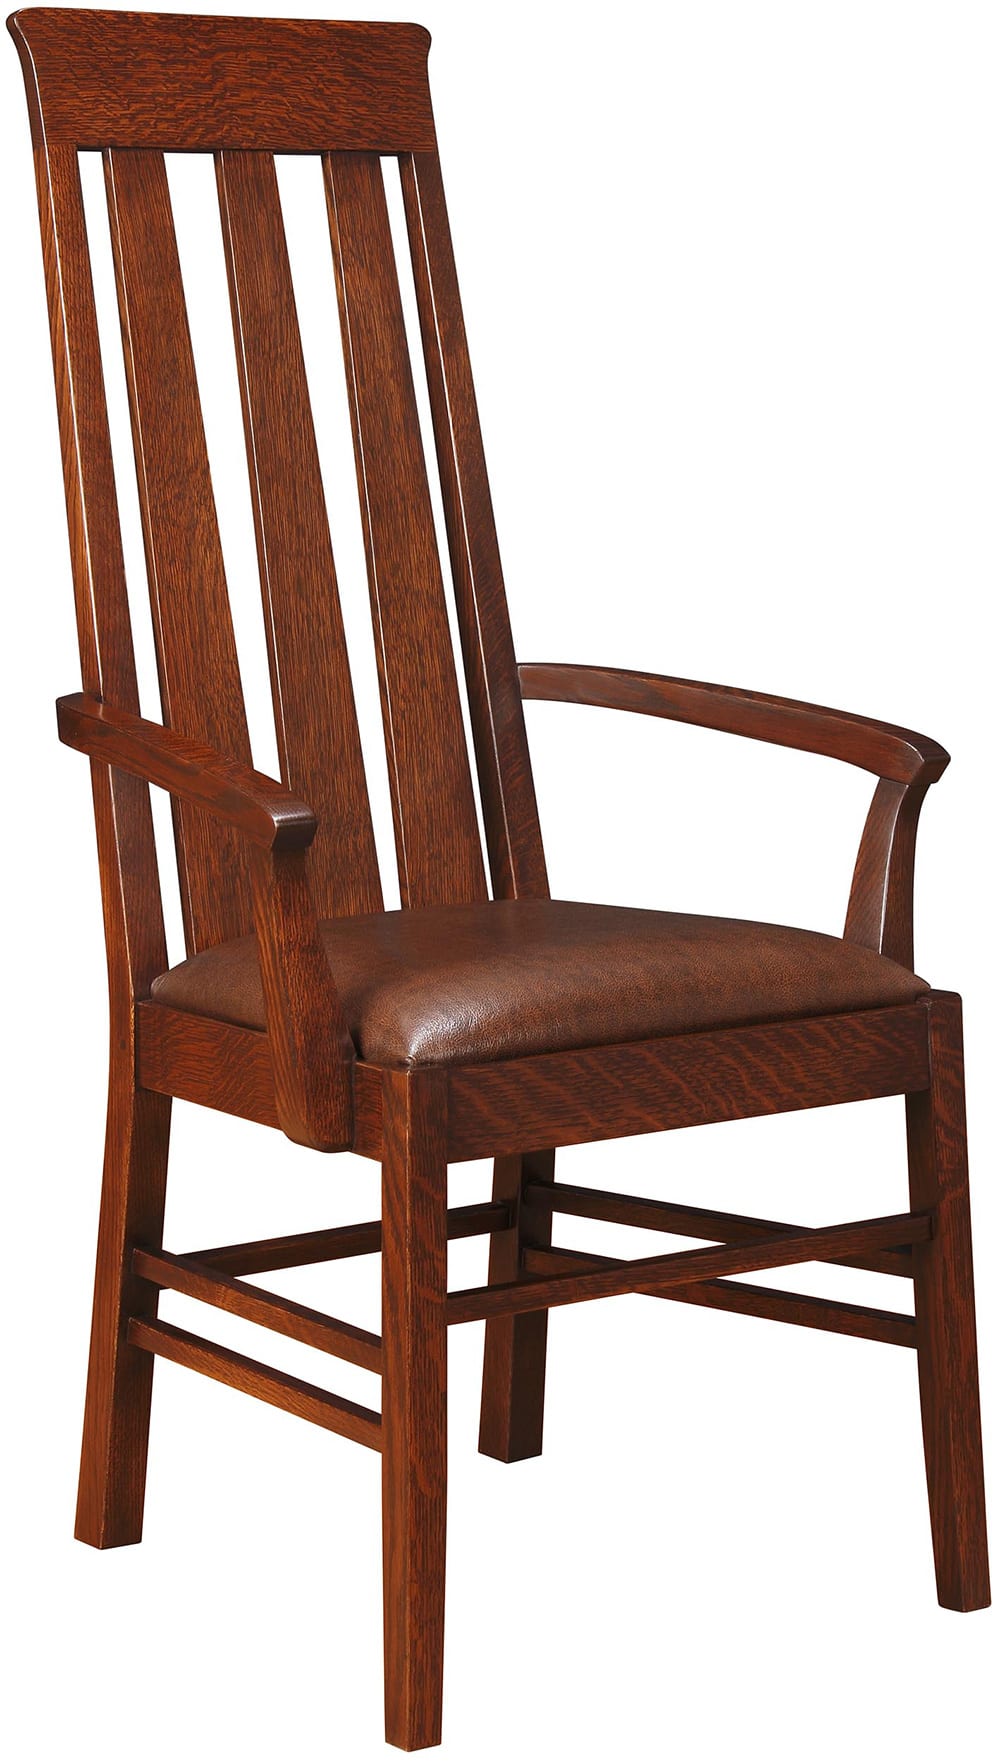 Highlands Arm Chair - Stickley Brand